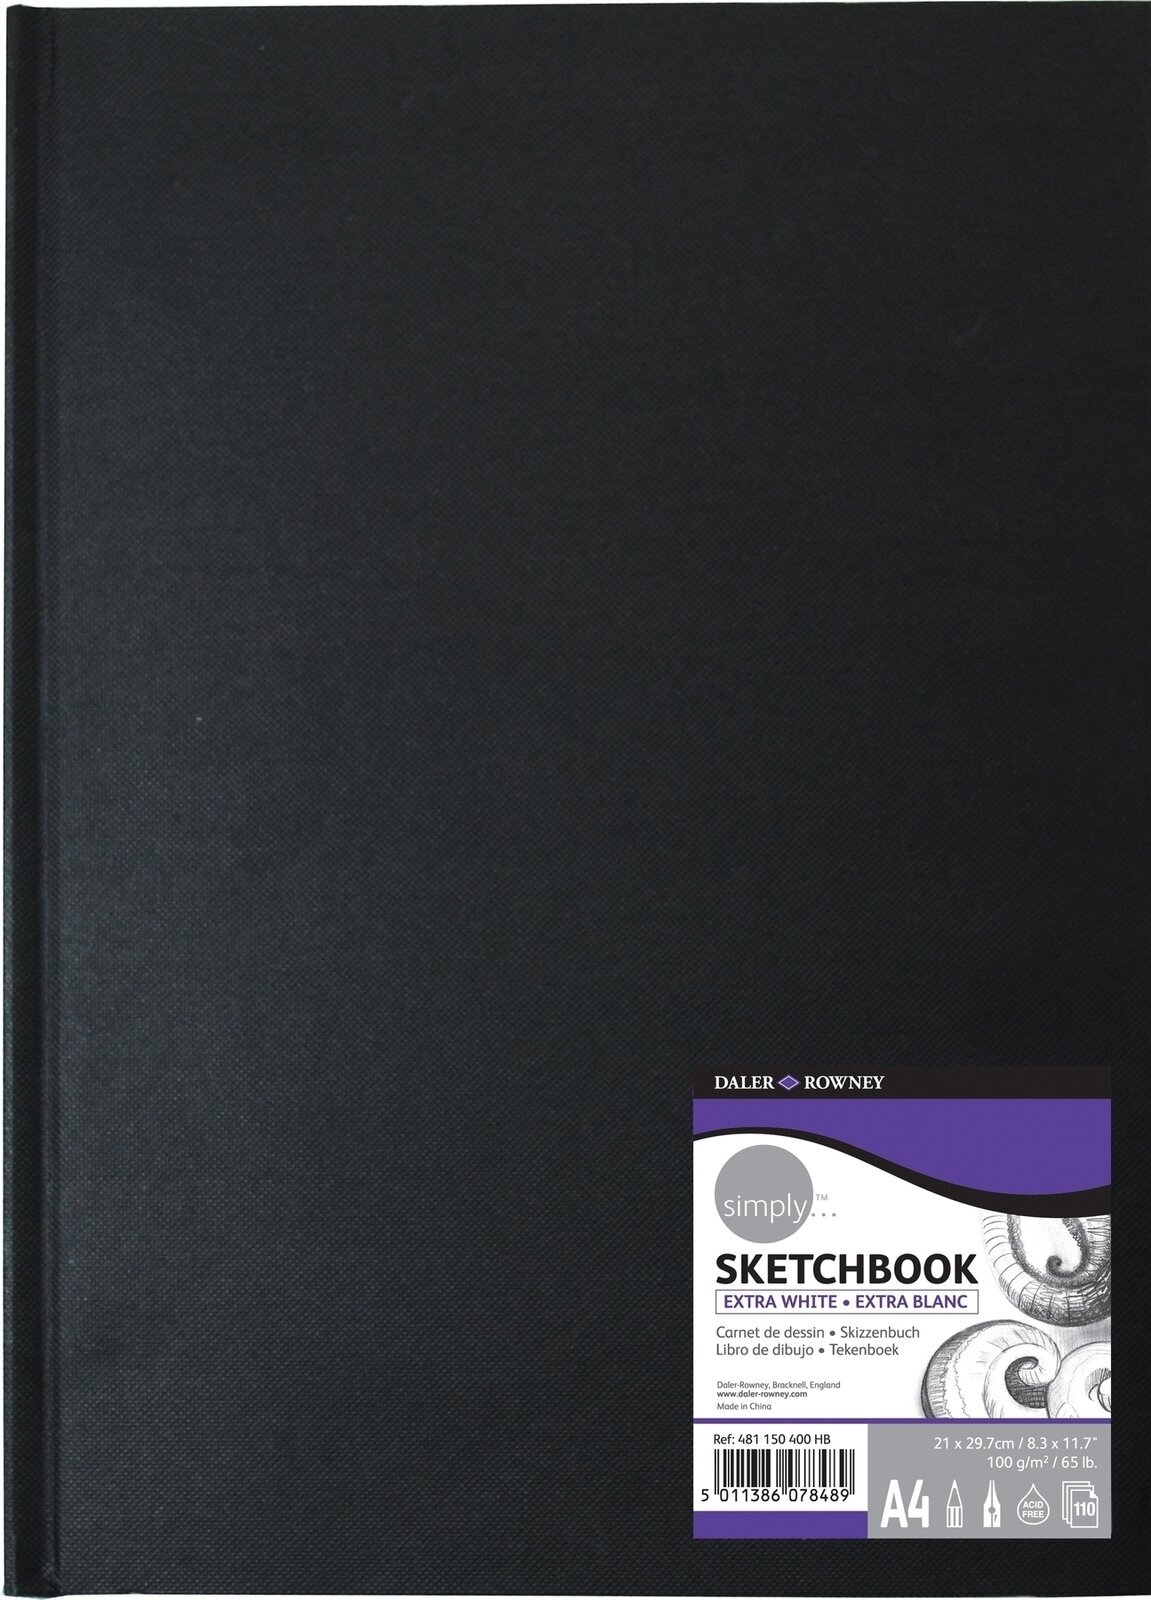 Sketchbook Daler Rowney Simply Sketchbook Simply A4 100 g Black Sketchbook